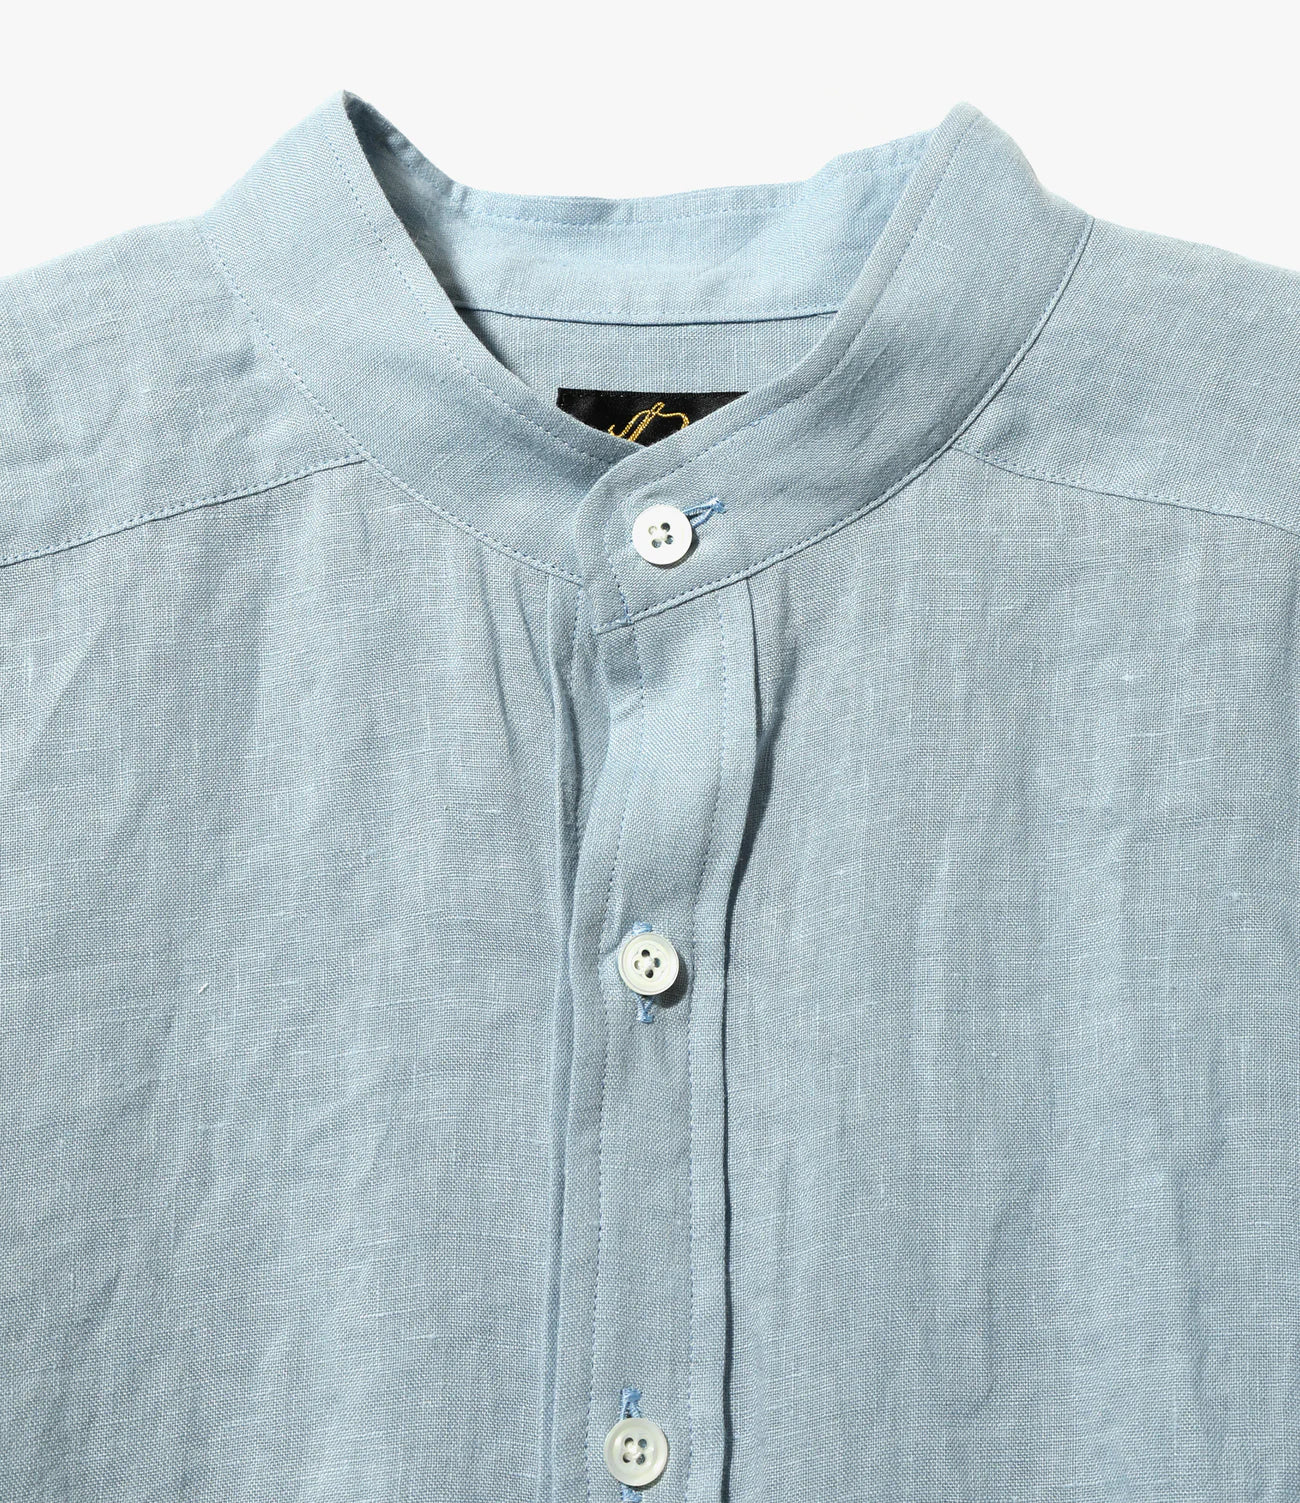 日本新作needles 20ss Shirt - Linen Cloth シャツ